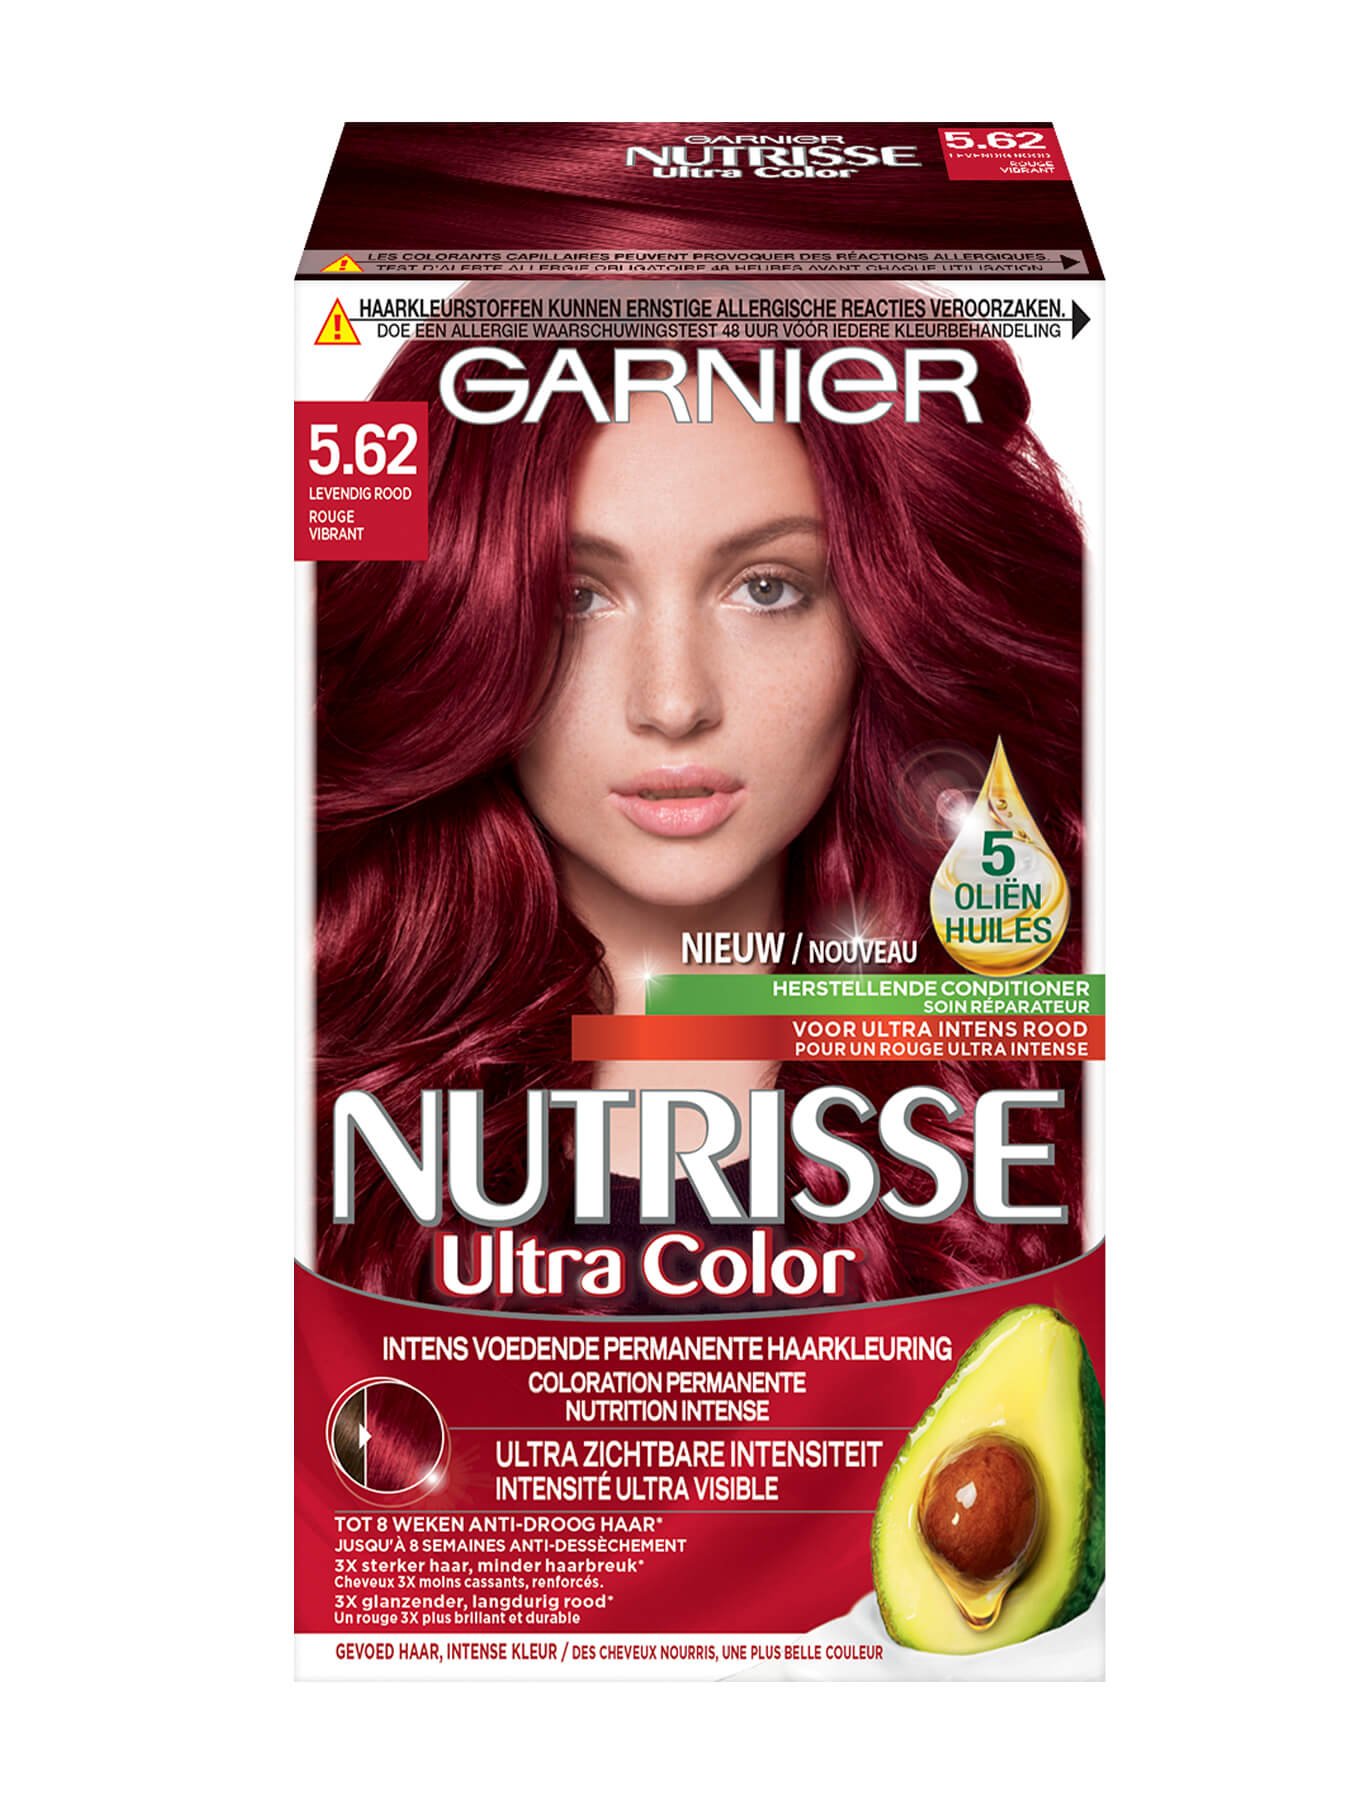 Nutrisse Ultra Color 5.62 levendig rood